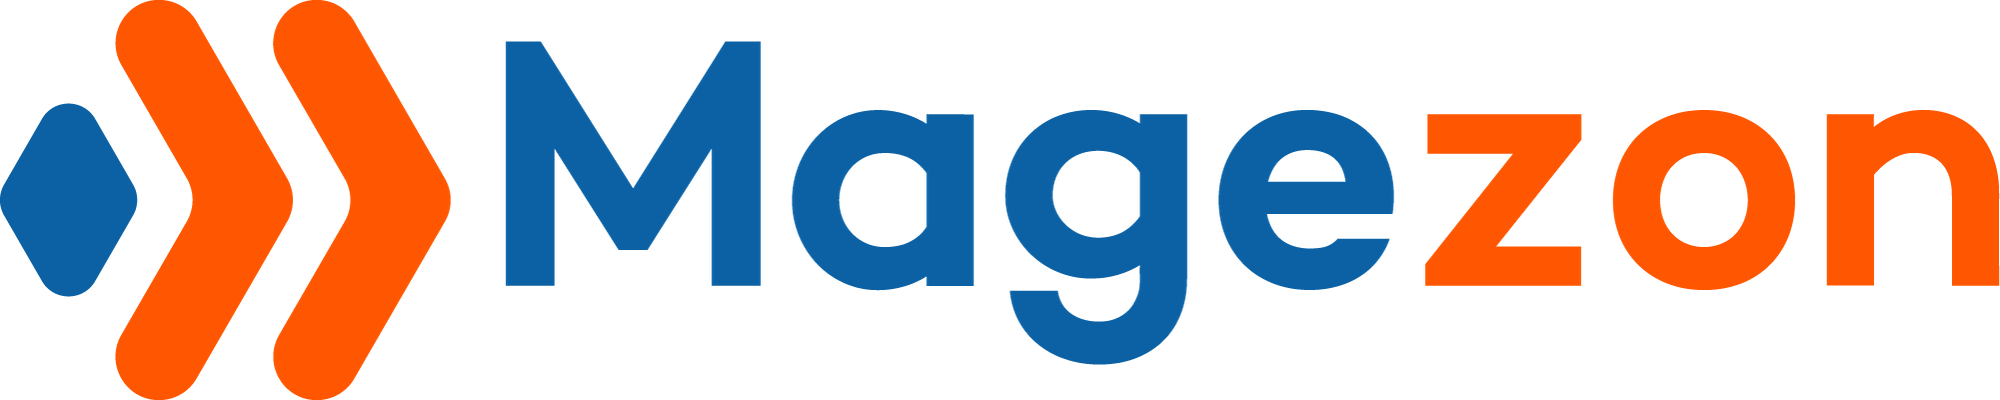 Magezon logo